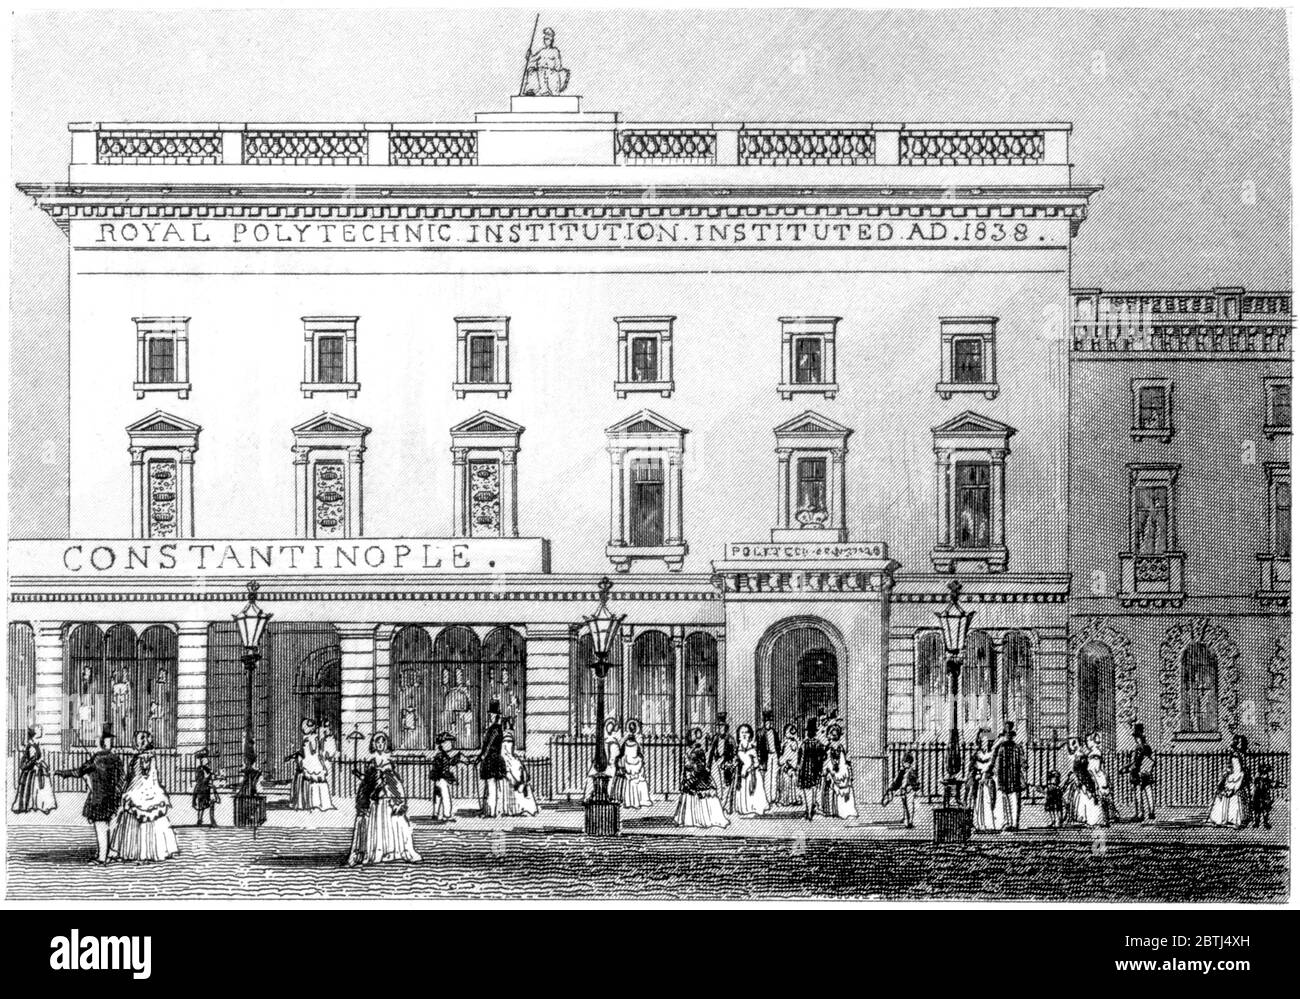 Ein Stich der Royal Polytechnic Institution London, gescannt in hoher Auflösung aus einem Buch gedruckt im Jahre 1851. Ich glaubte, dass das Urheberrecht frei ist. Stockfoto